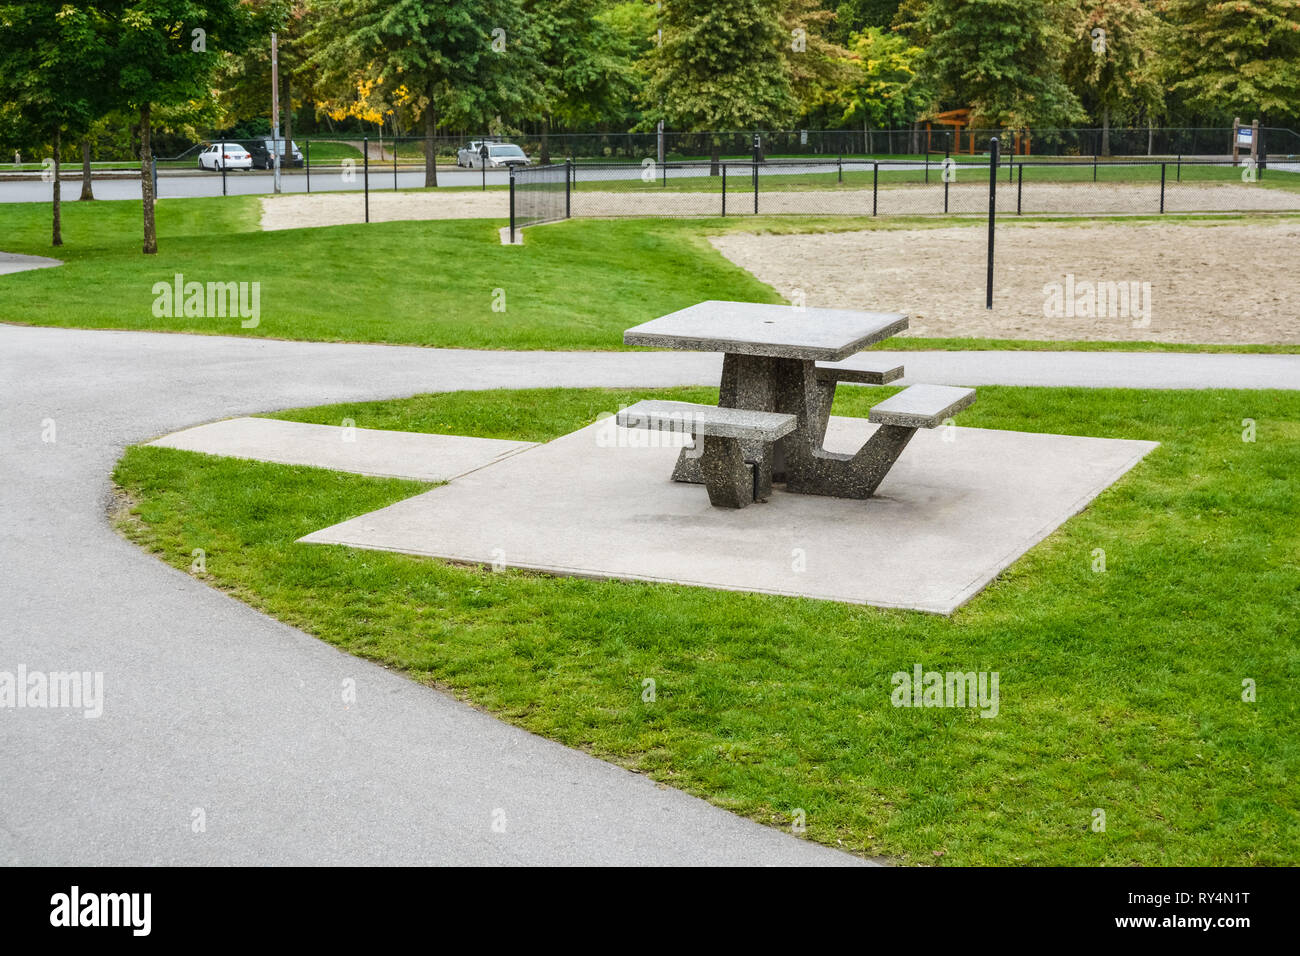 Table de pique-nique et des bancs sur pelouse verte dans un parc. Zone de loisirs urbains Banque D'Images